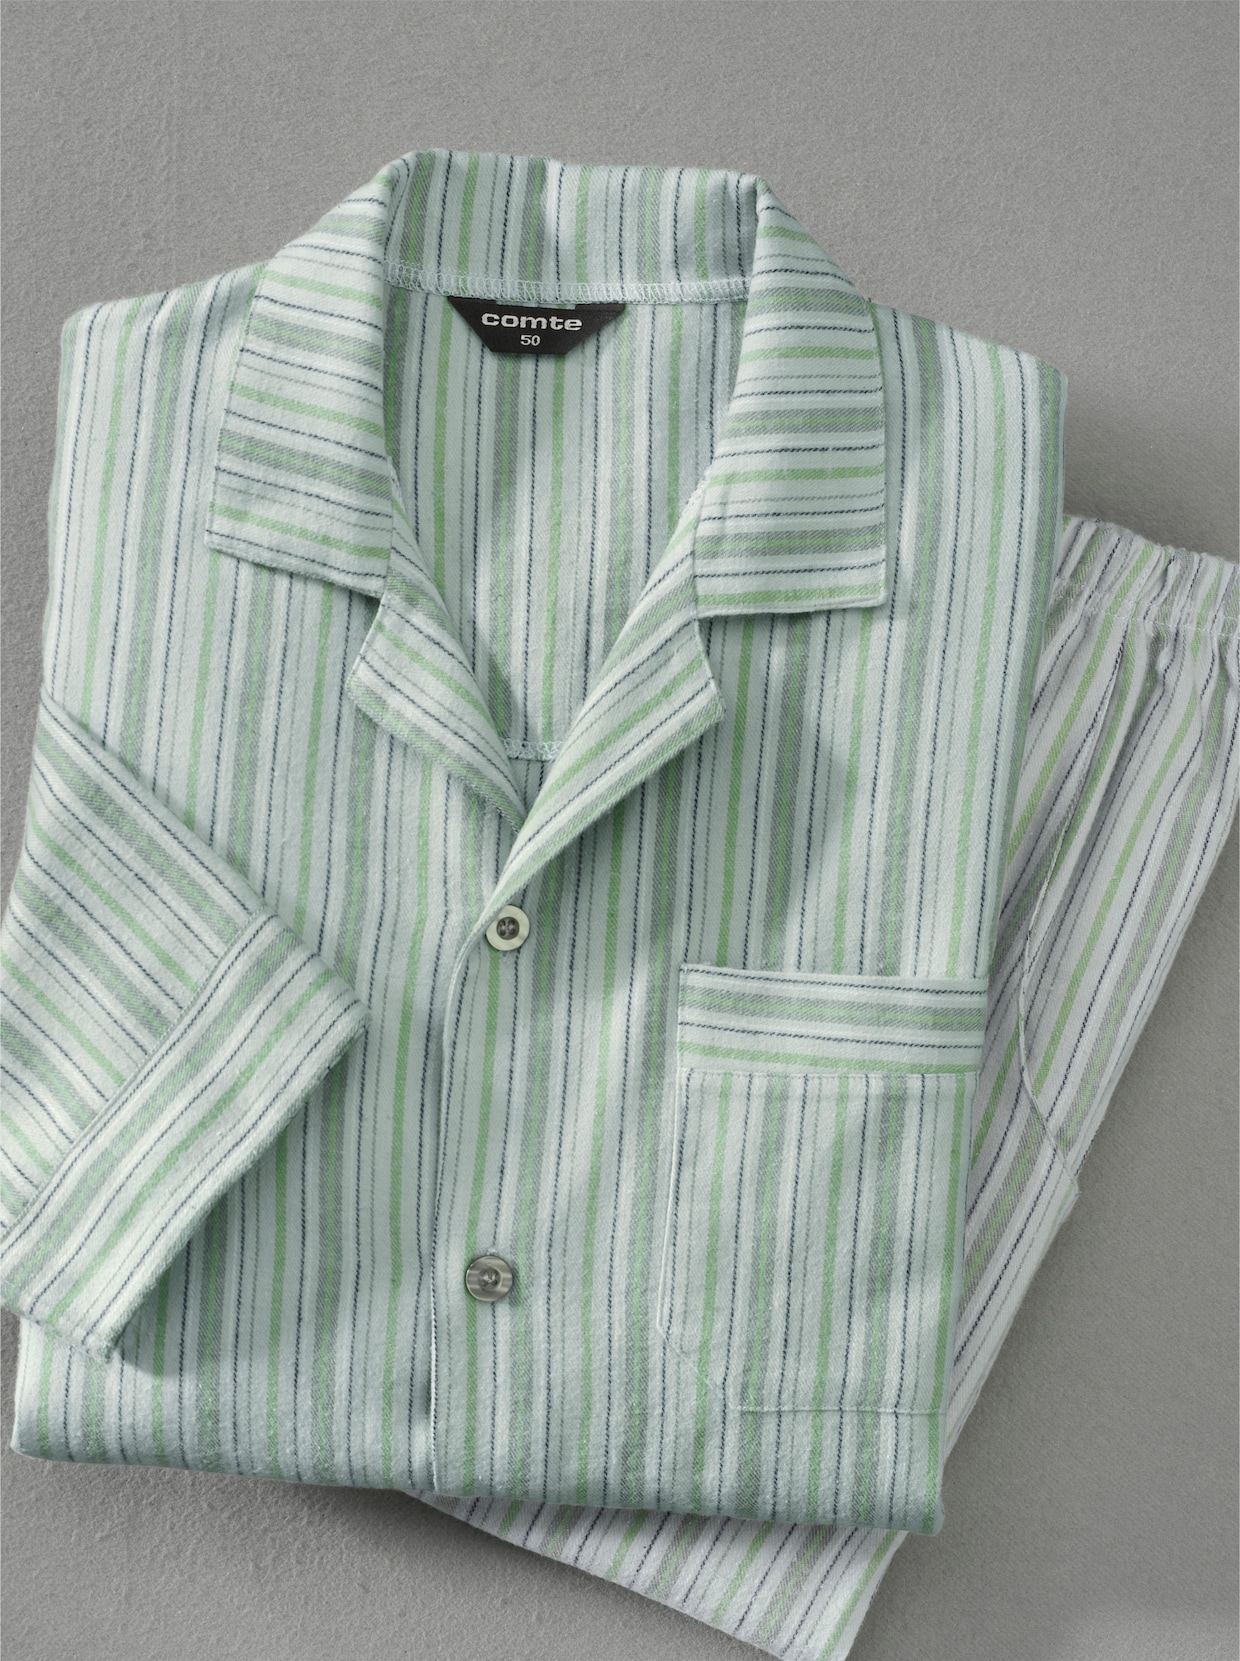 Comte Pyjama - groen gestreept